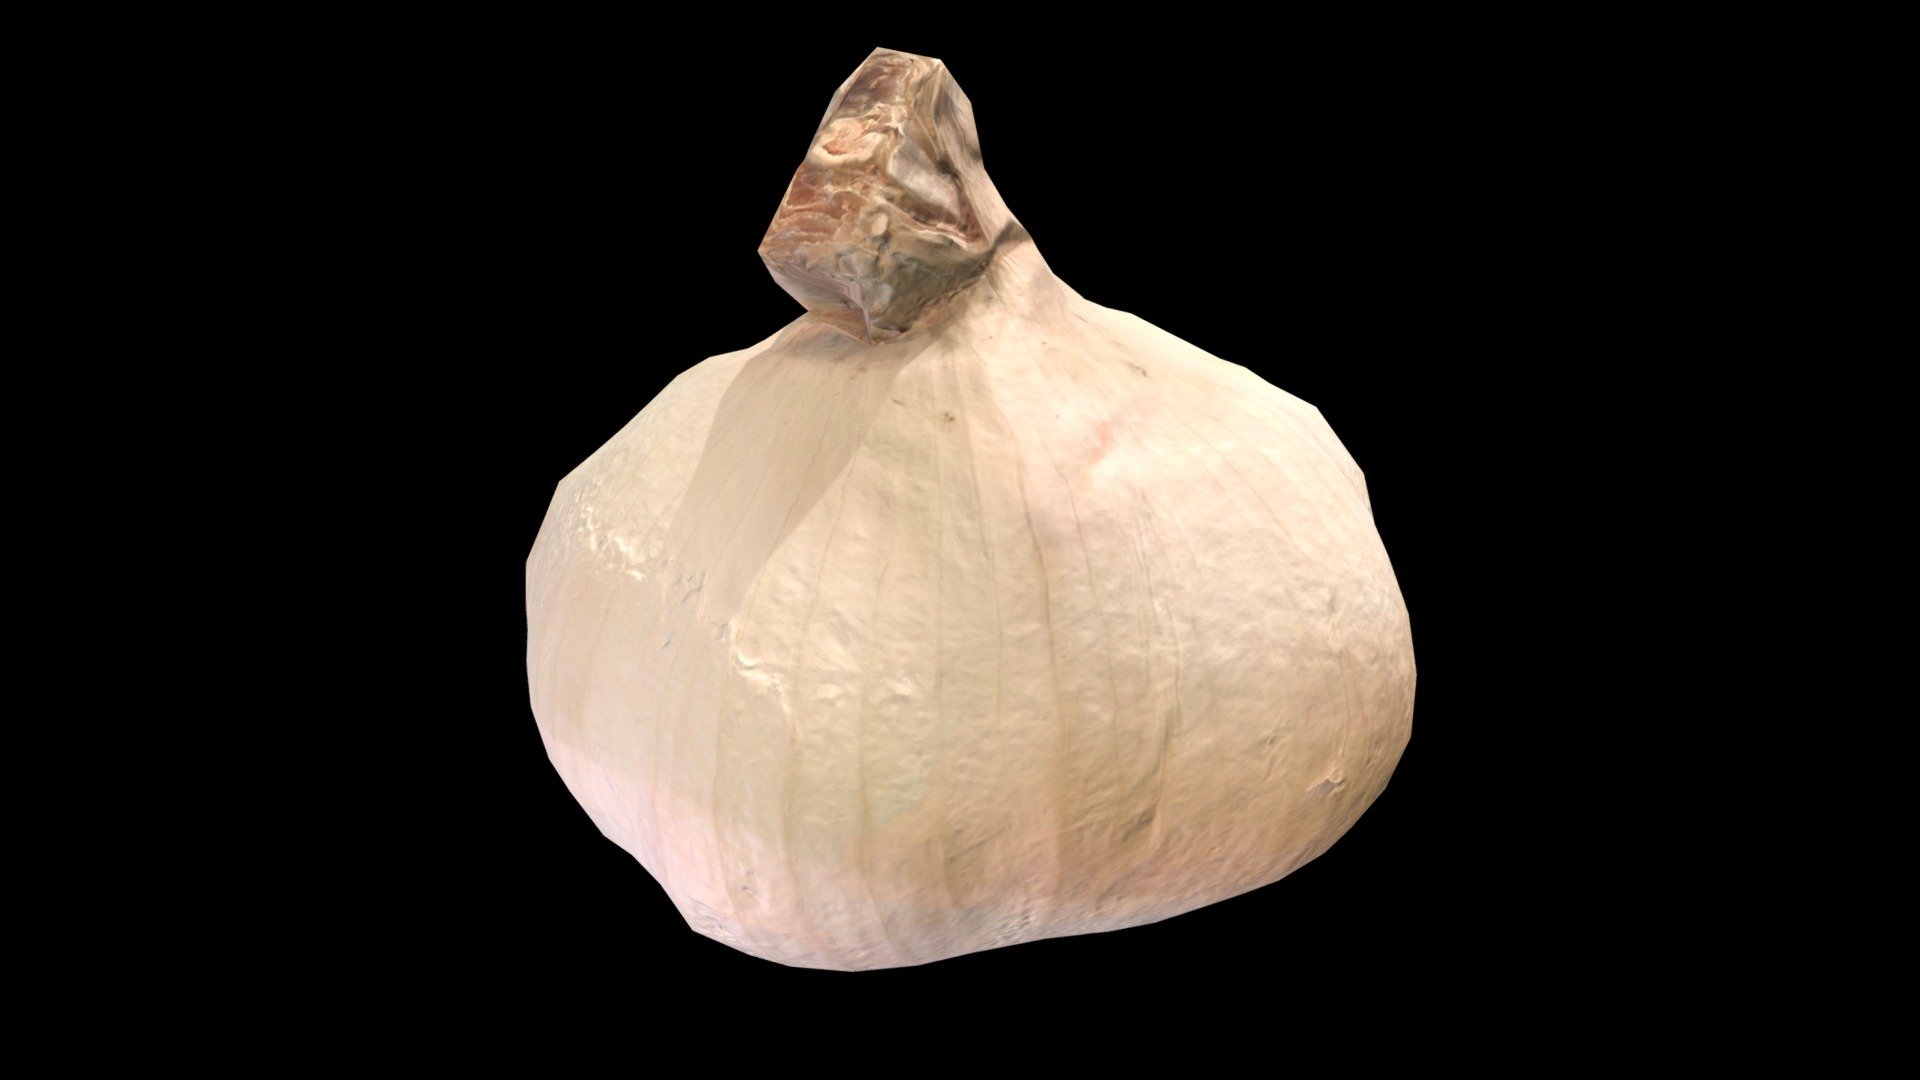 Garlic (LowPoly)